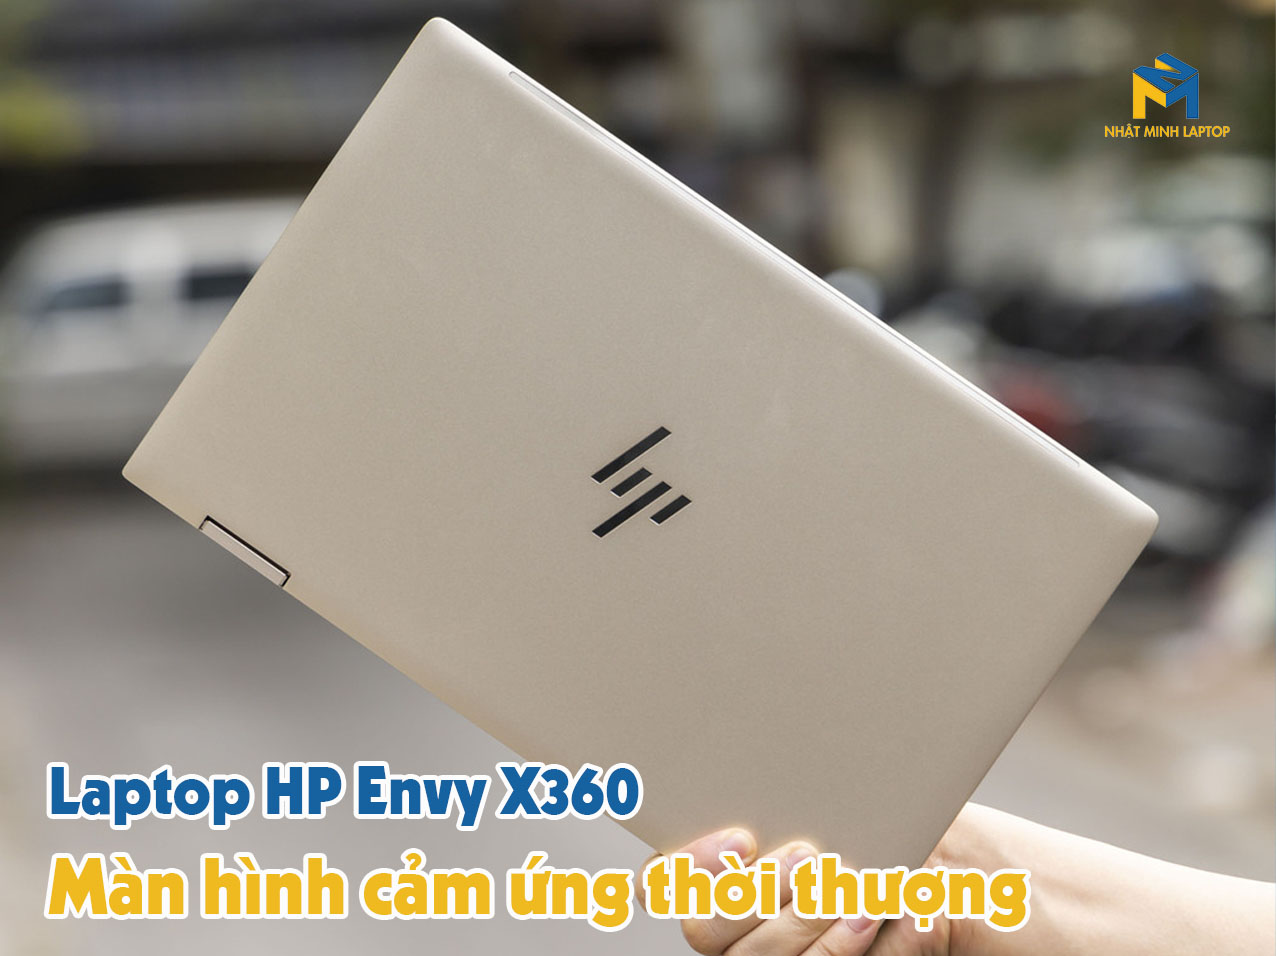 Laptop HP Envy X360 sở hữu màn hình cảm ứng thời thượng